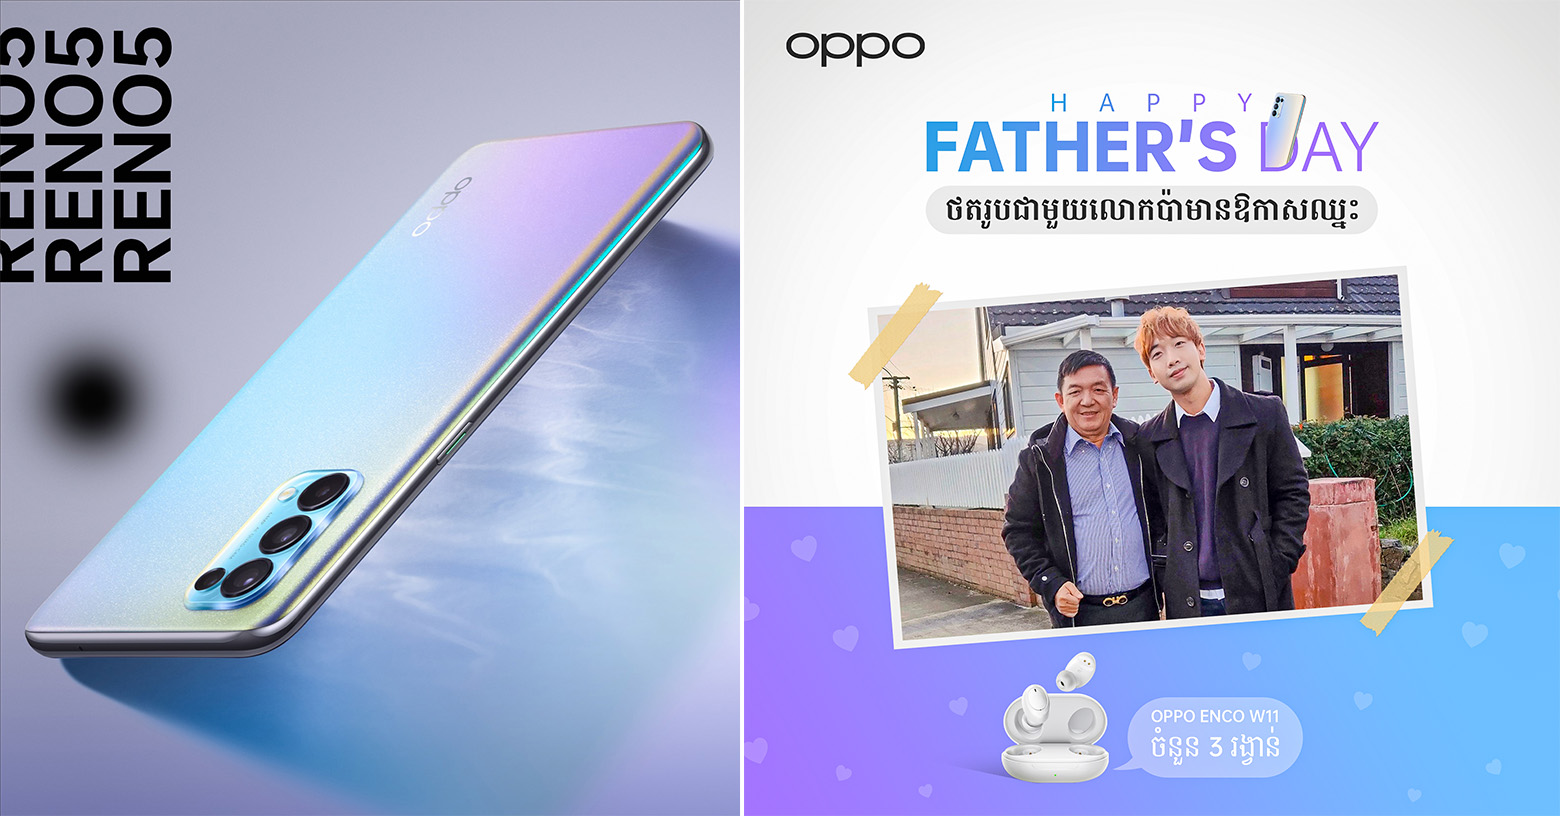 បង្កើនភាពស្និតស្នាលរបស់អ្នក ថតរូបជាមួយលោកឪពុកលើ OPPO Reno5 ដើម្បីទទួលបានរង្វាន់ក្នុងថ្ងៃ Father’s Day